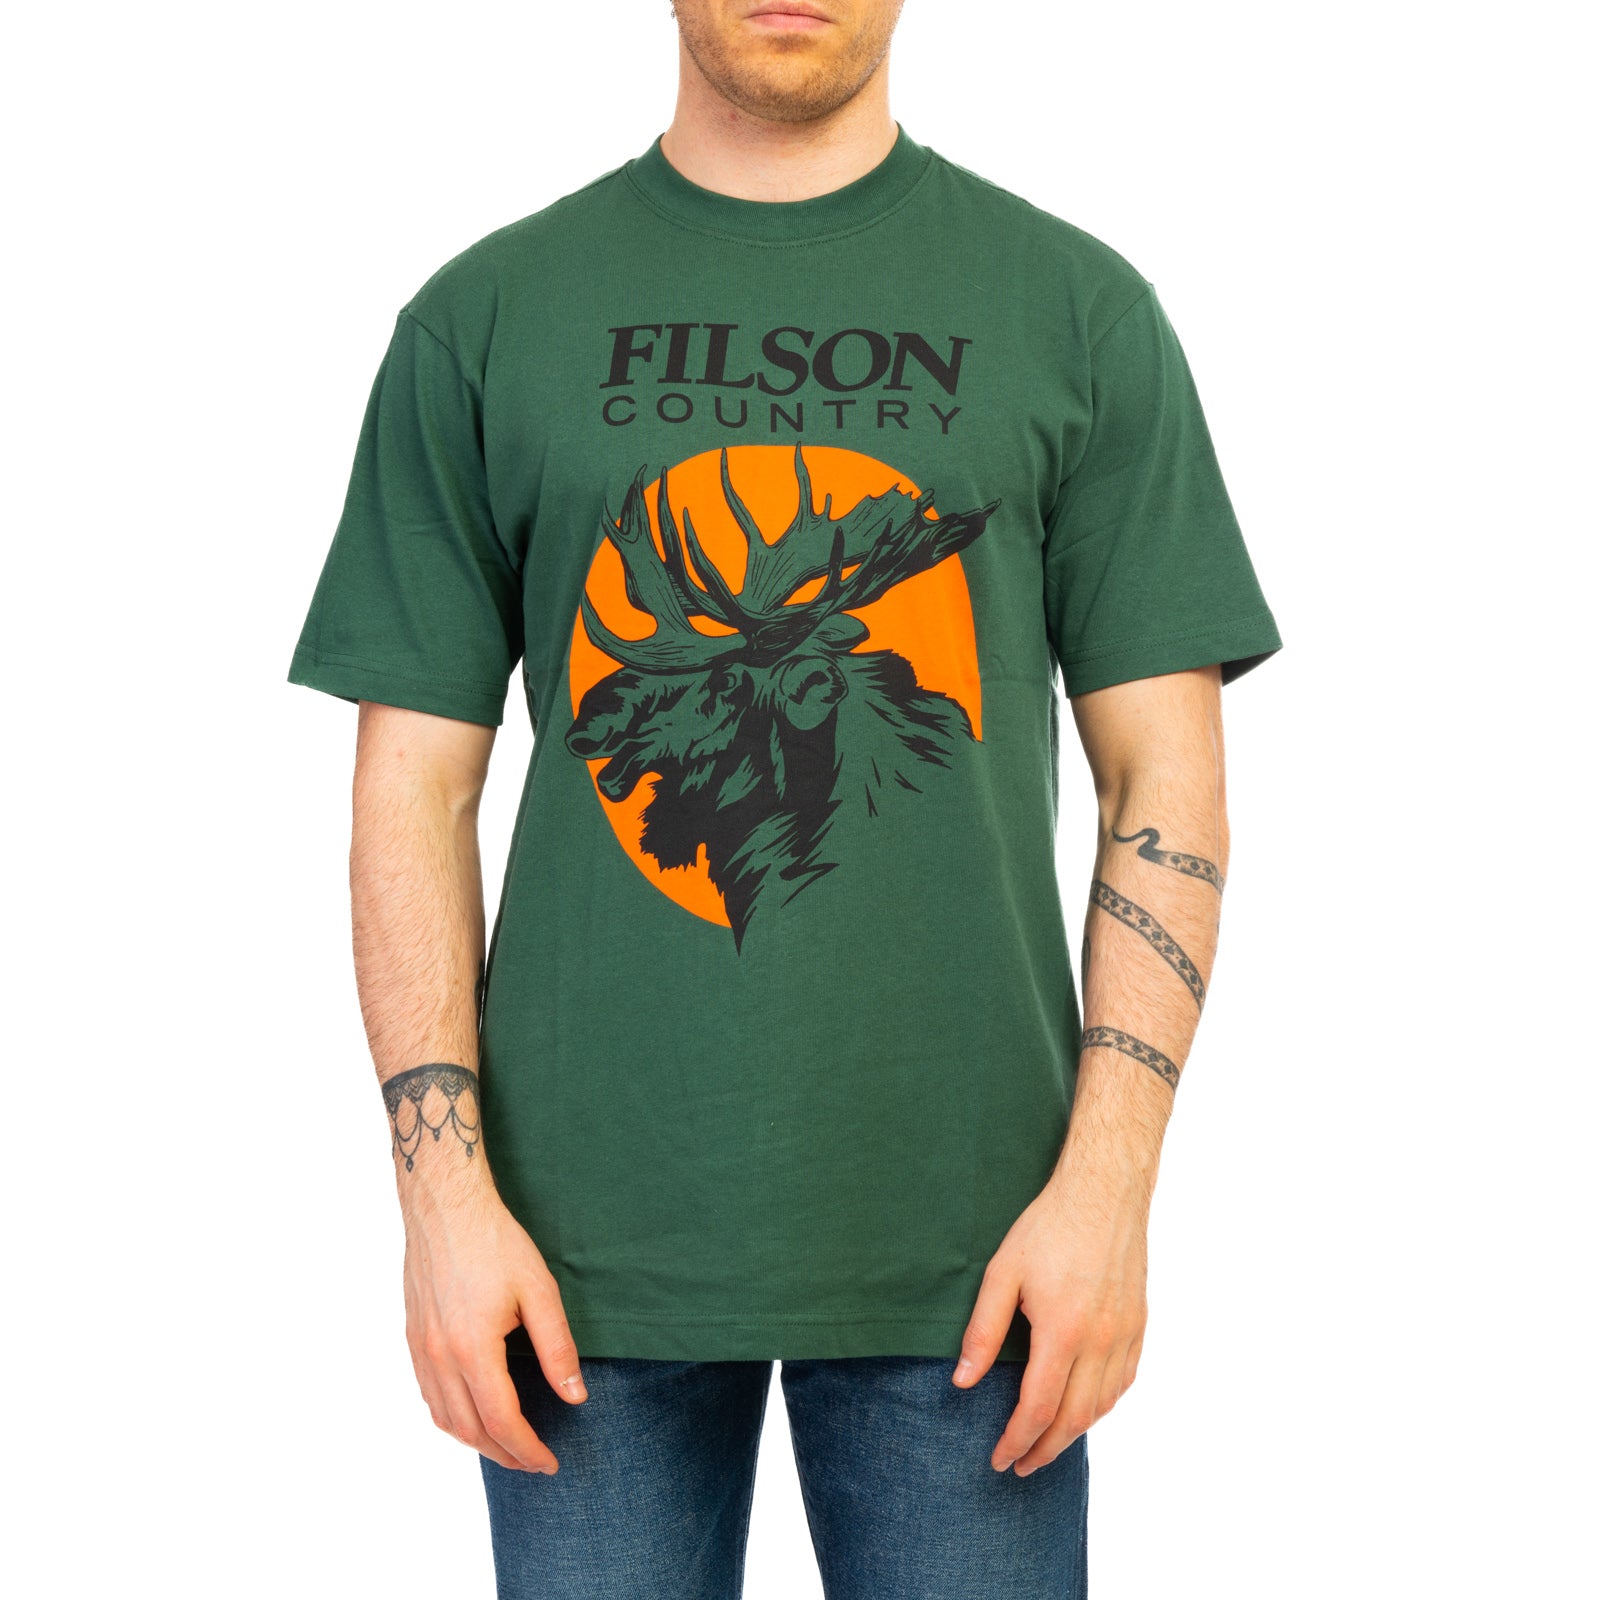 T-shirt FILSON
Verde